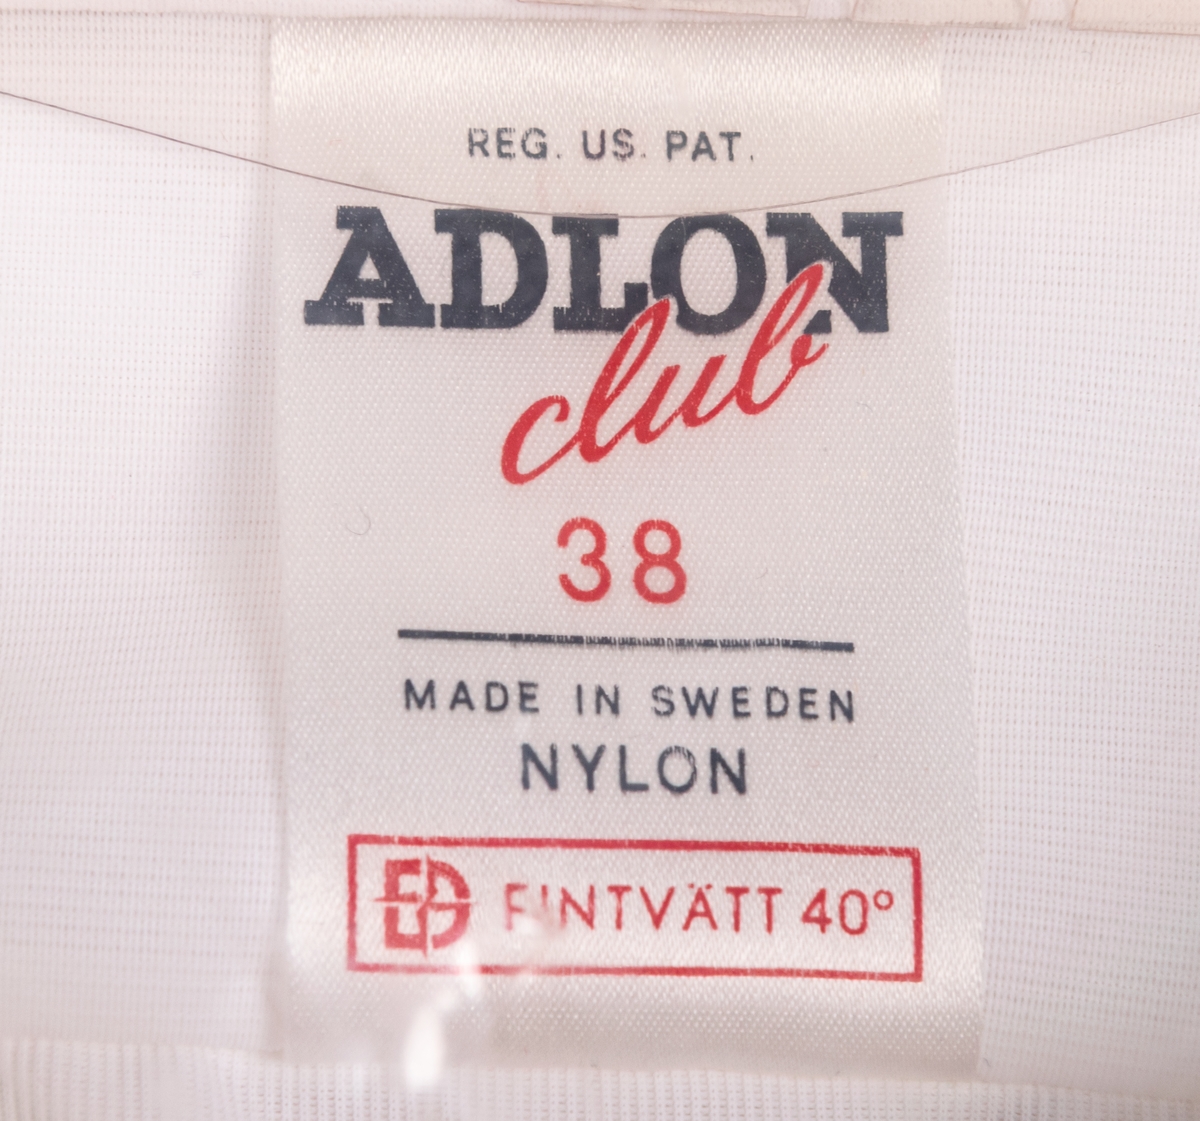 Nylonskjorta, vit i originalförpackning av plast.
Skjortan av märket "Aldon Club" tillverkade vid Hedbrants trikåfabrik i Helsingborg.